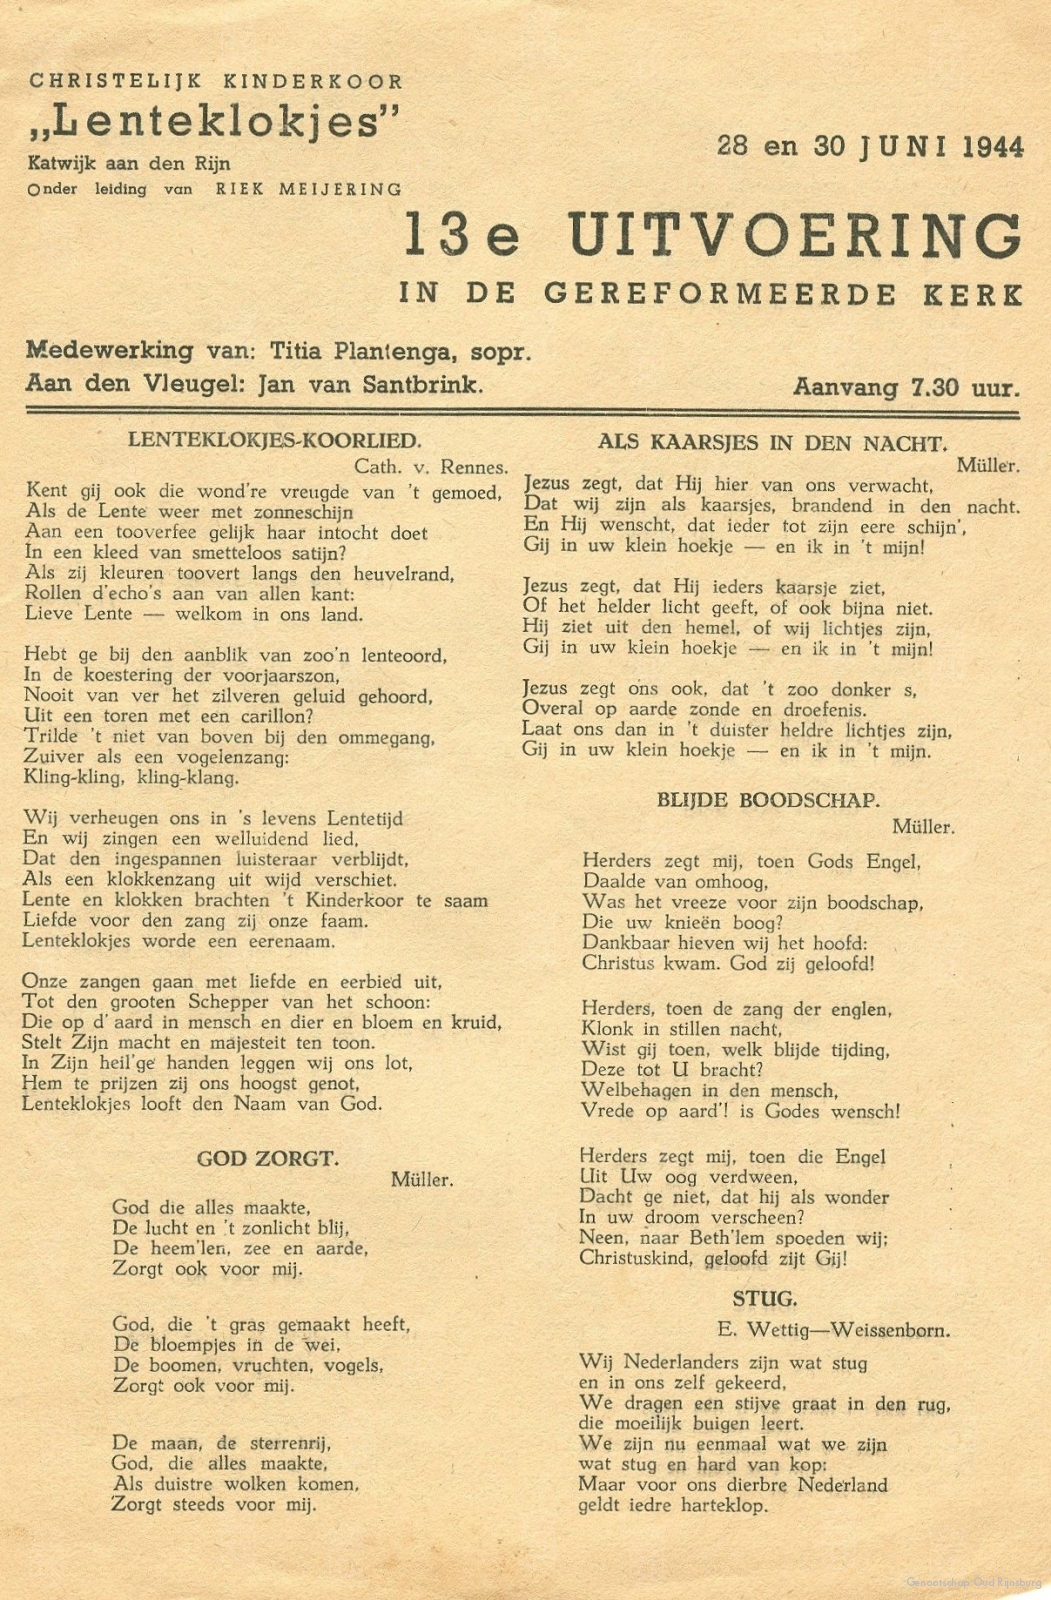 Een aankondiging voor een uitvoering van de Lenteklokjes in 1944.